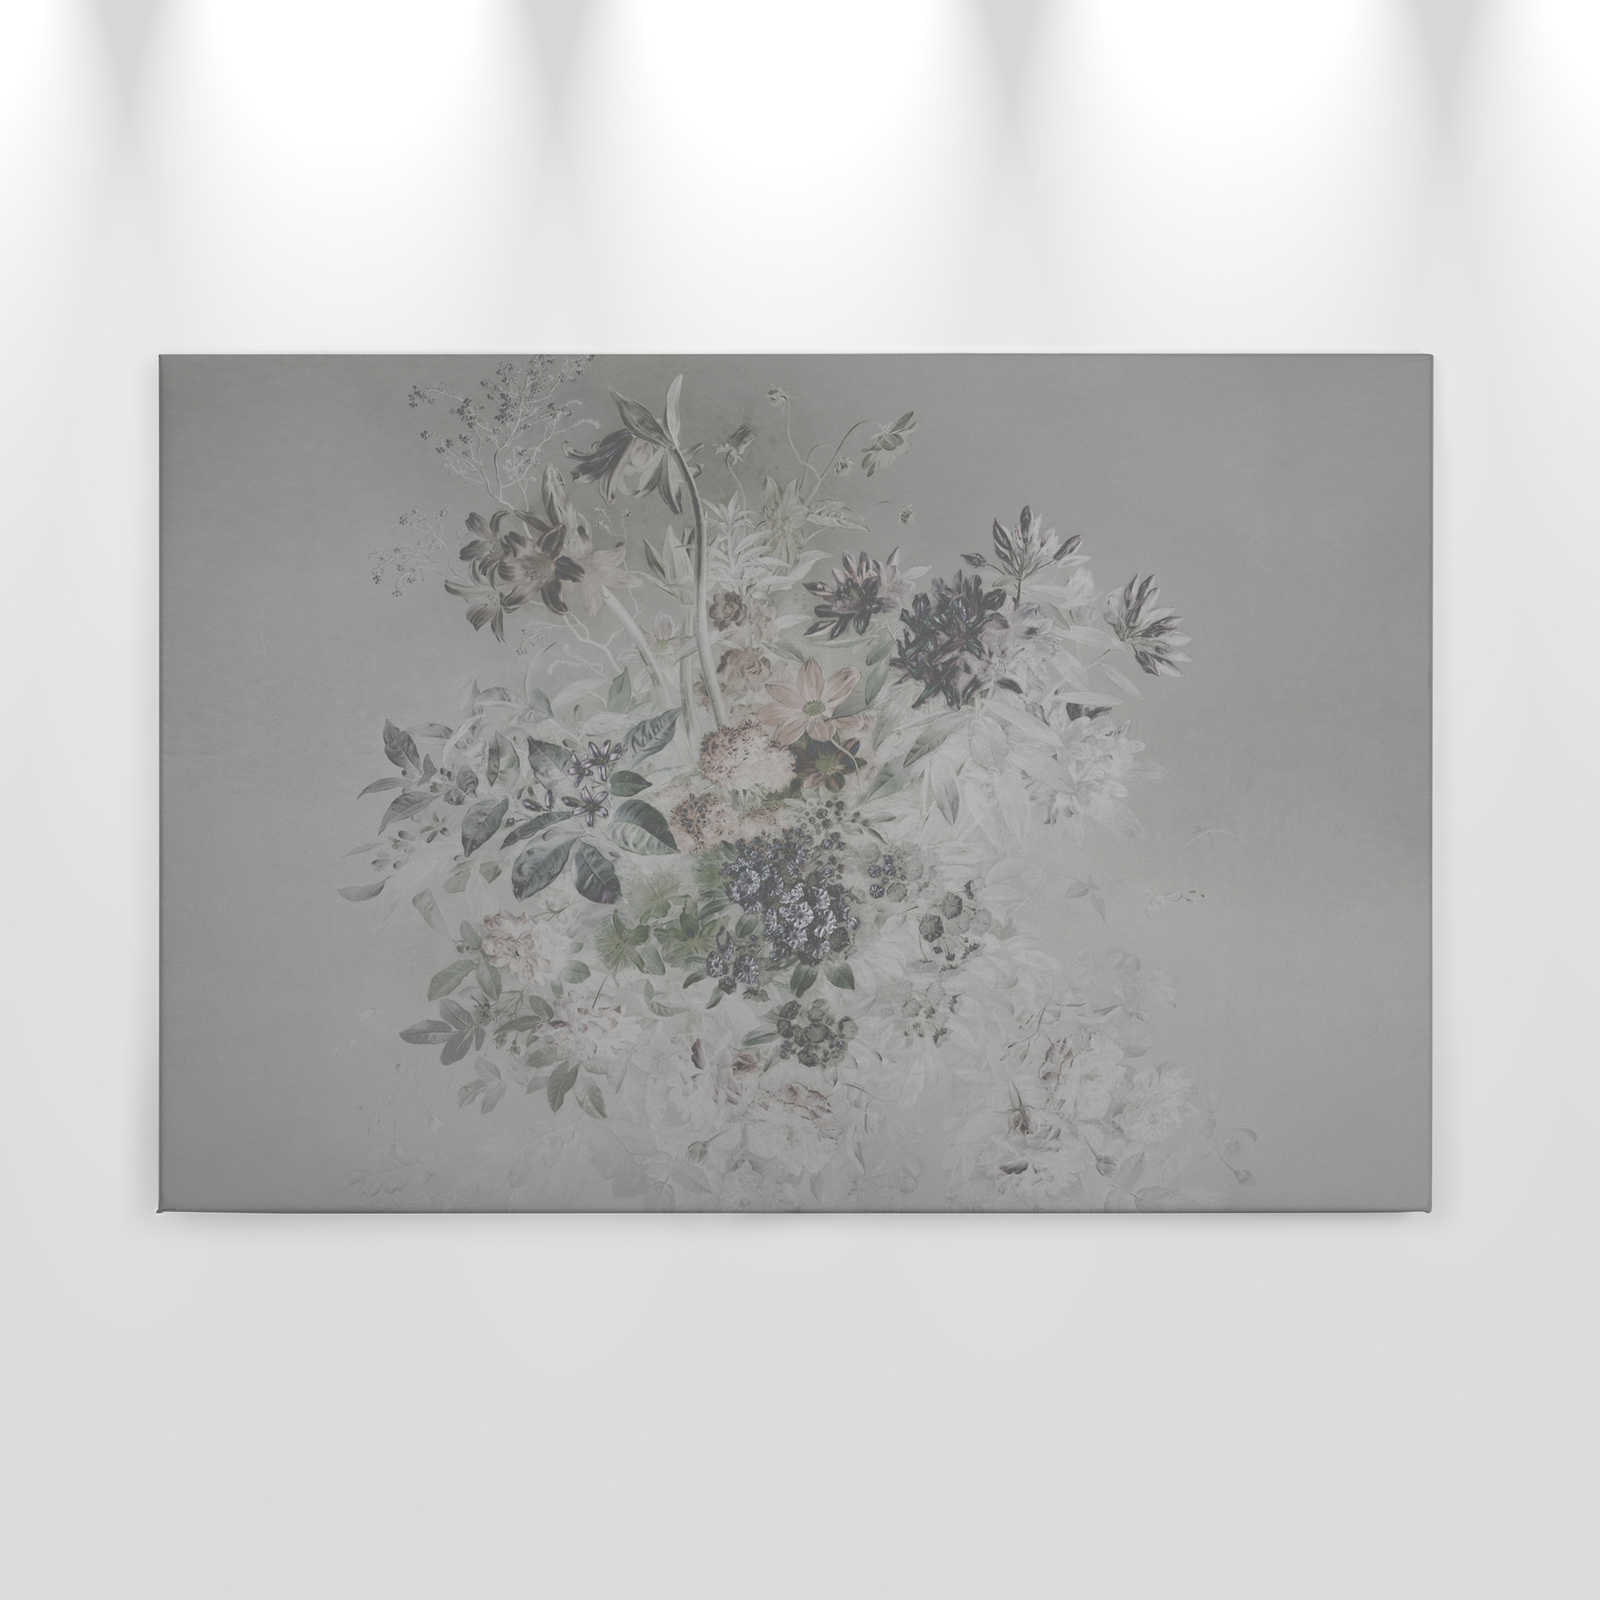             Canvas schilderij romantische bloemen - 0,90 m x 0,60 m
        